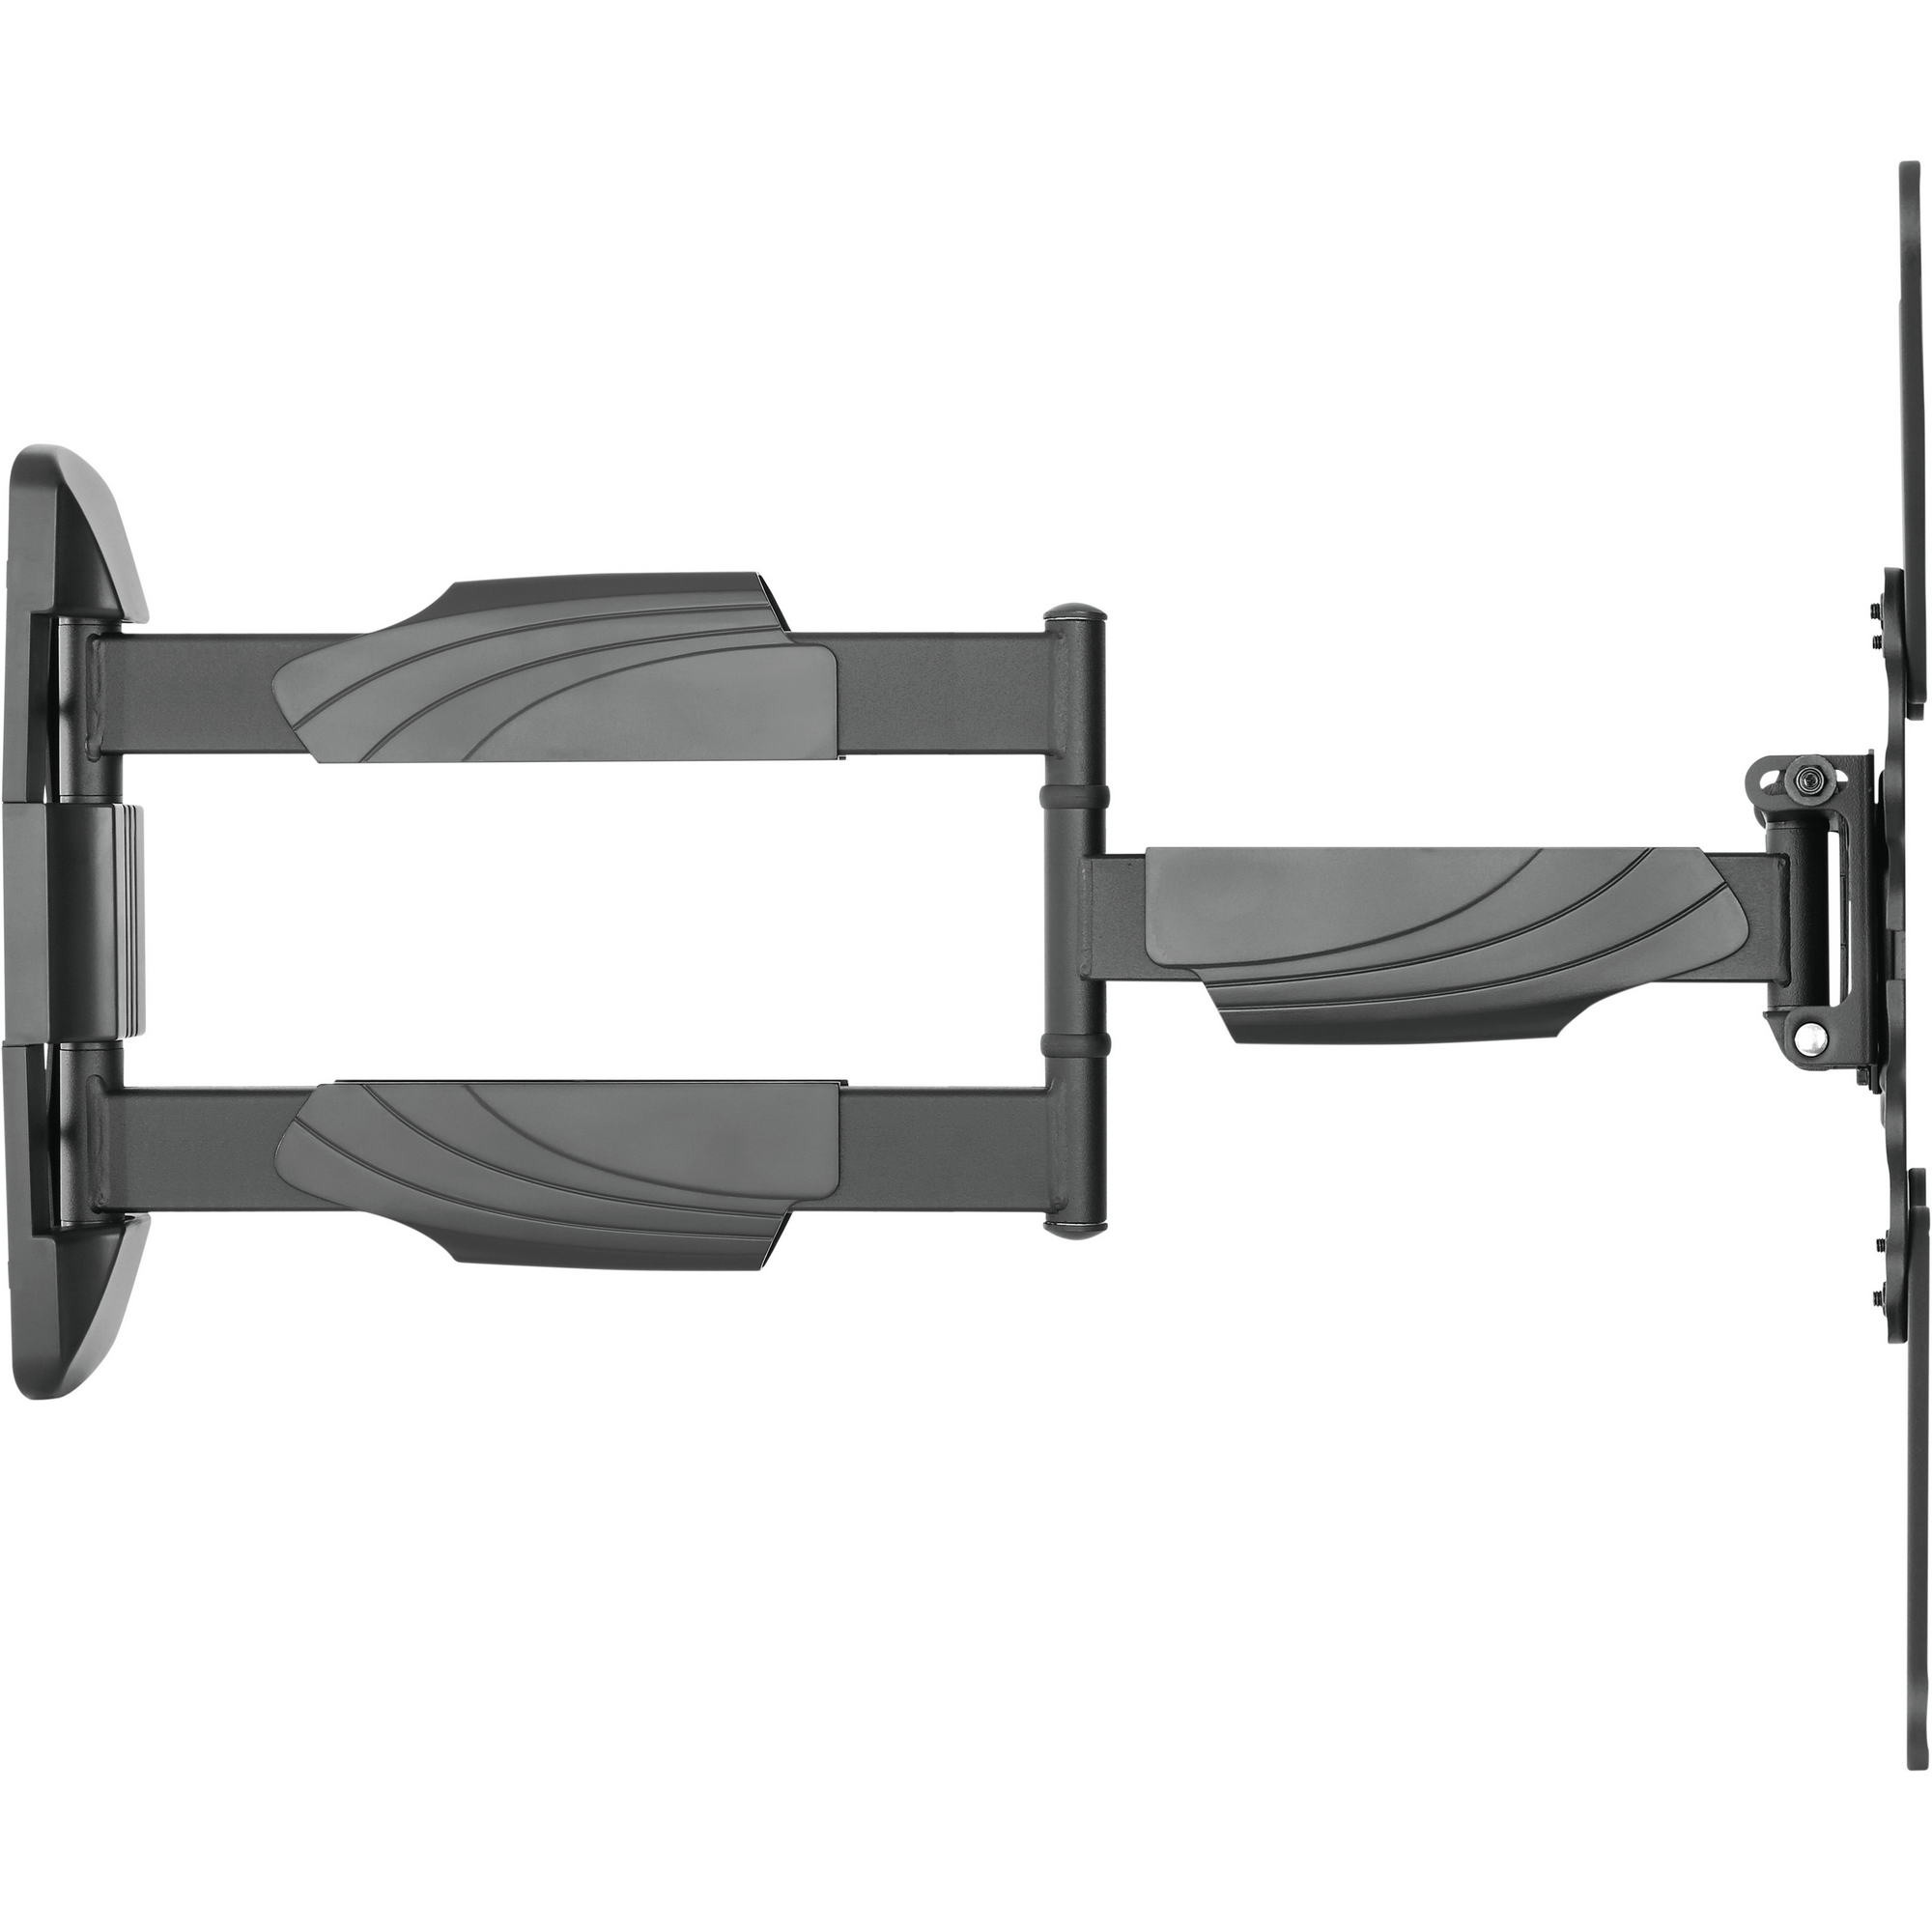 TV-Wandhalter 'Motion 4' für 35 kg Gewicht neigbar schwenkbar drehbar + product picture